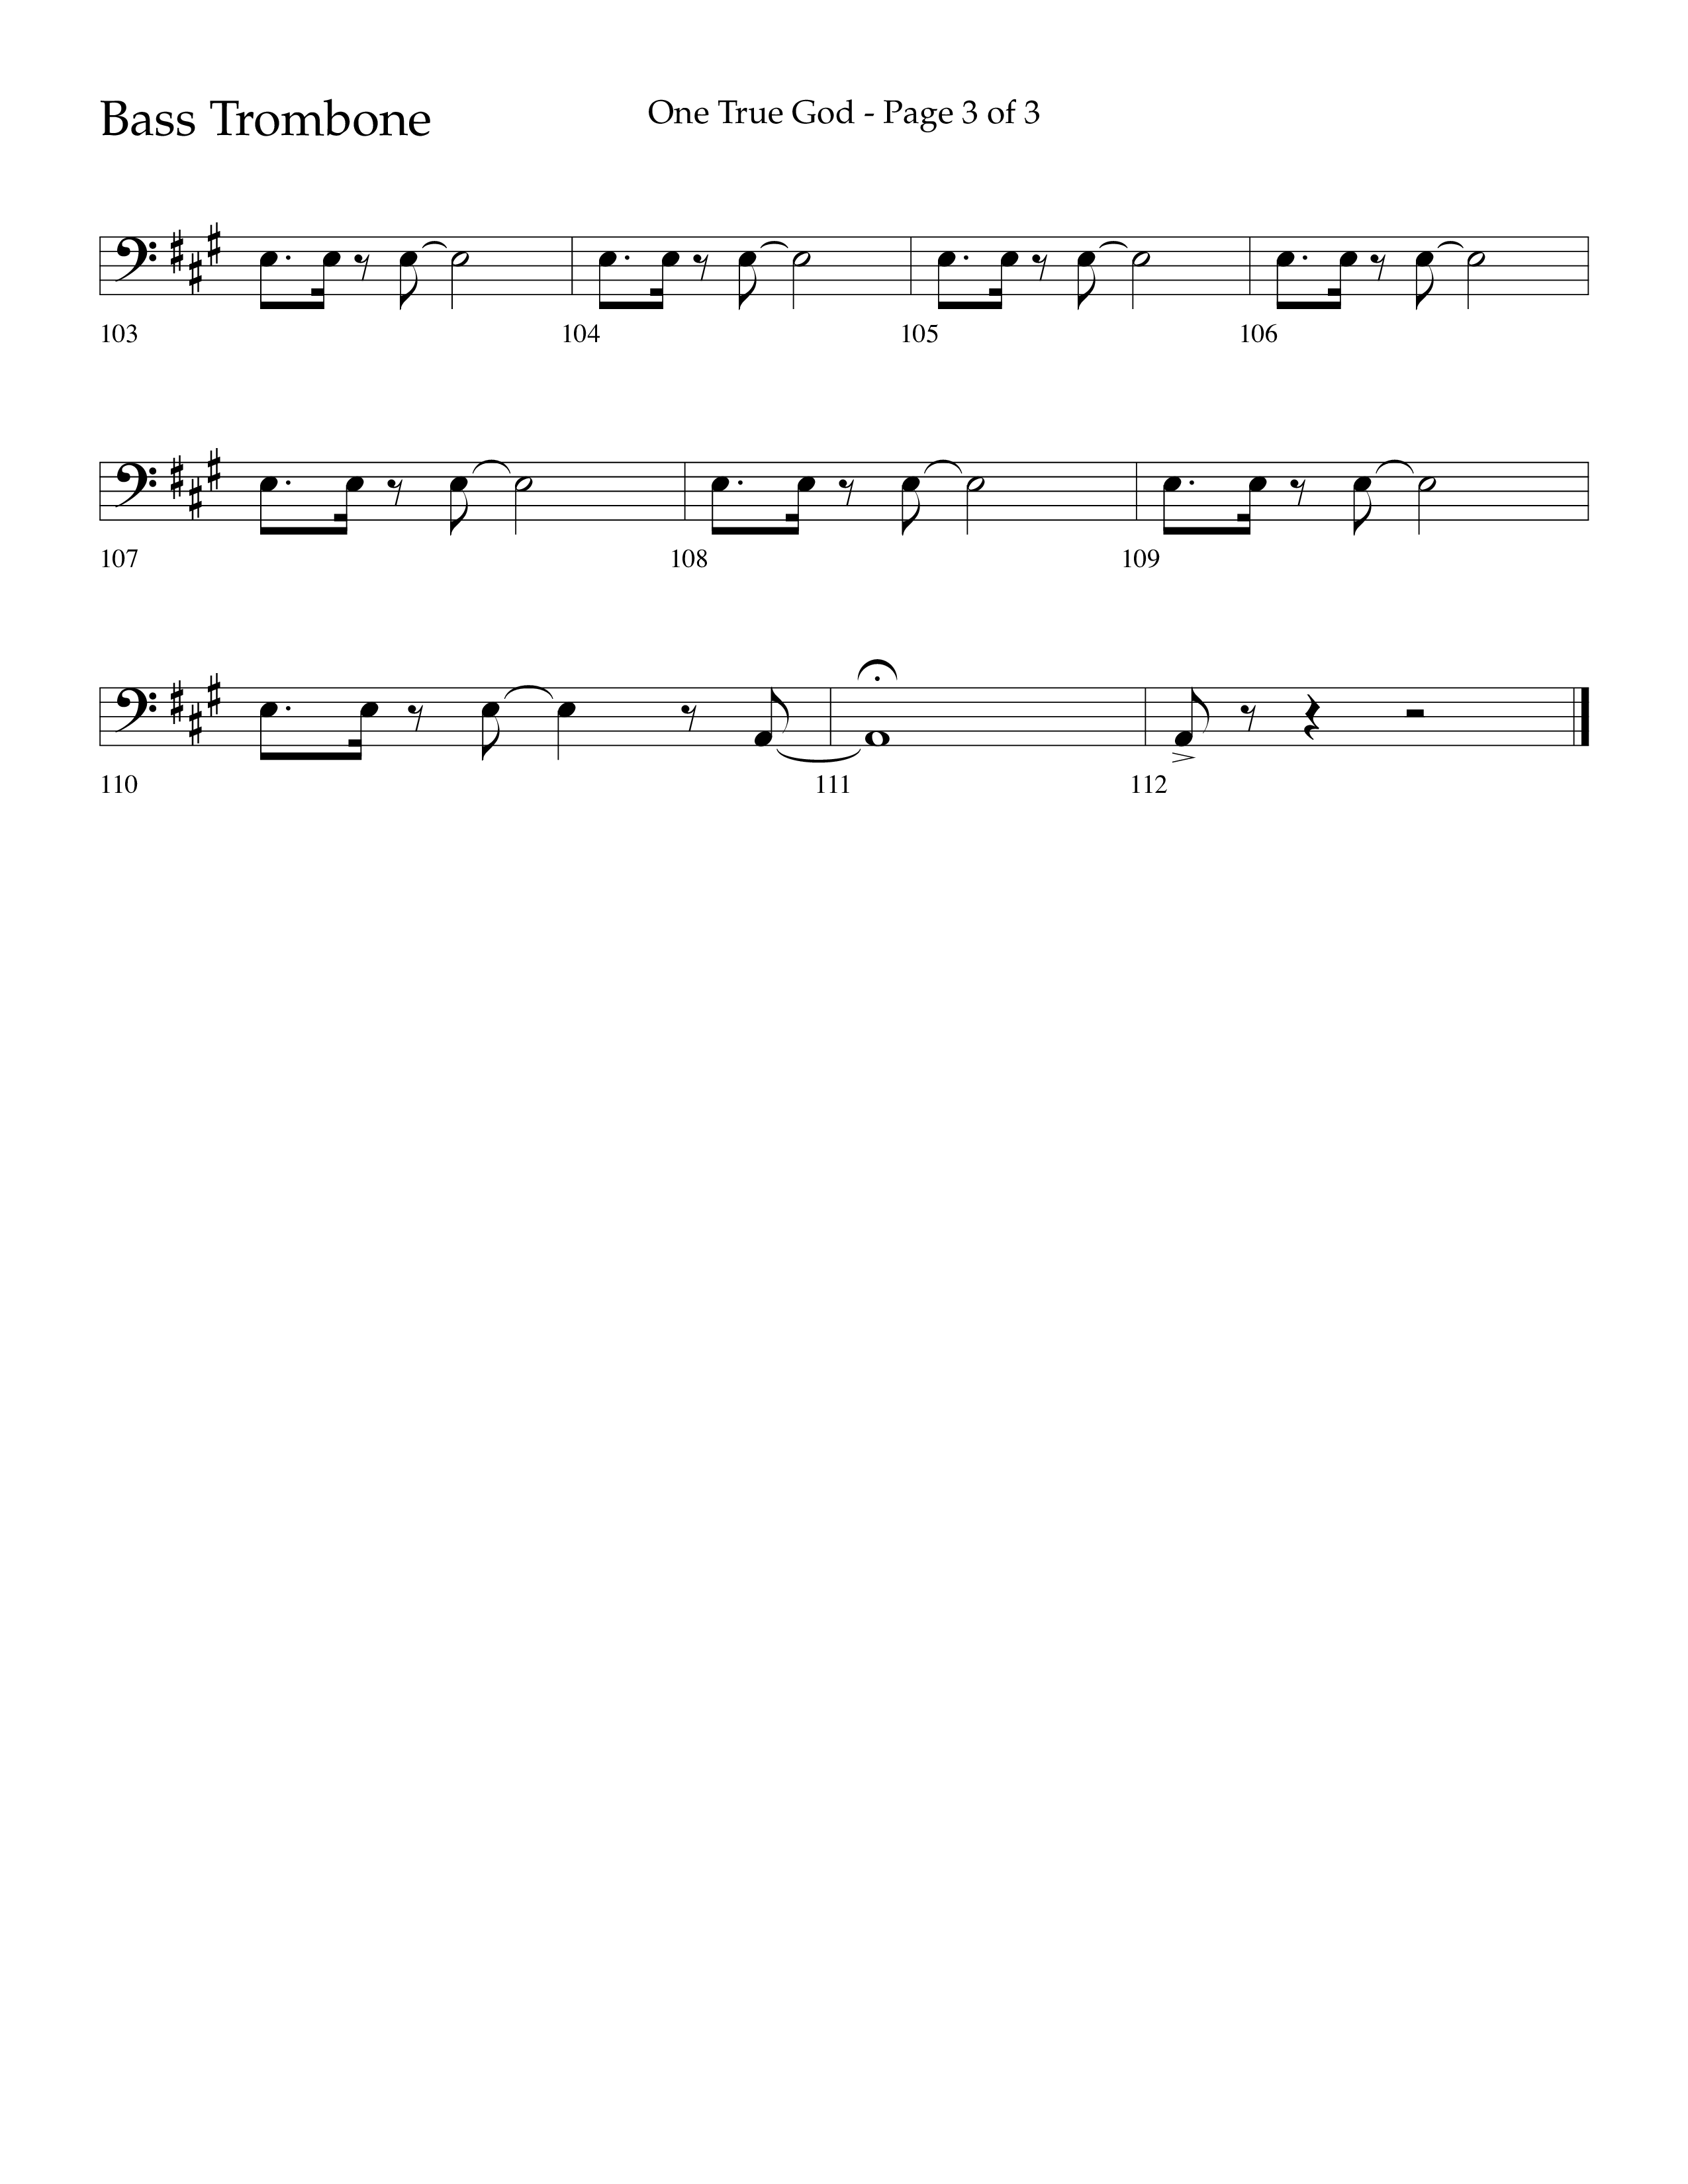 One True God (Choral Anthem SATB) Bass Trombone (Lifeway Choral / Arr. Bradley Knight)